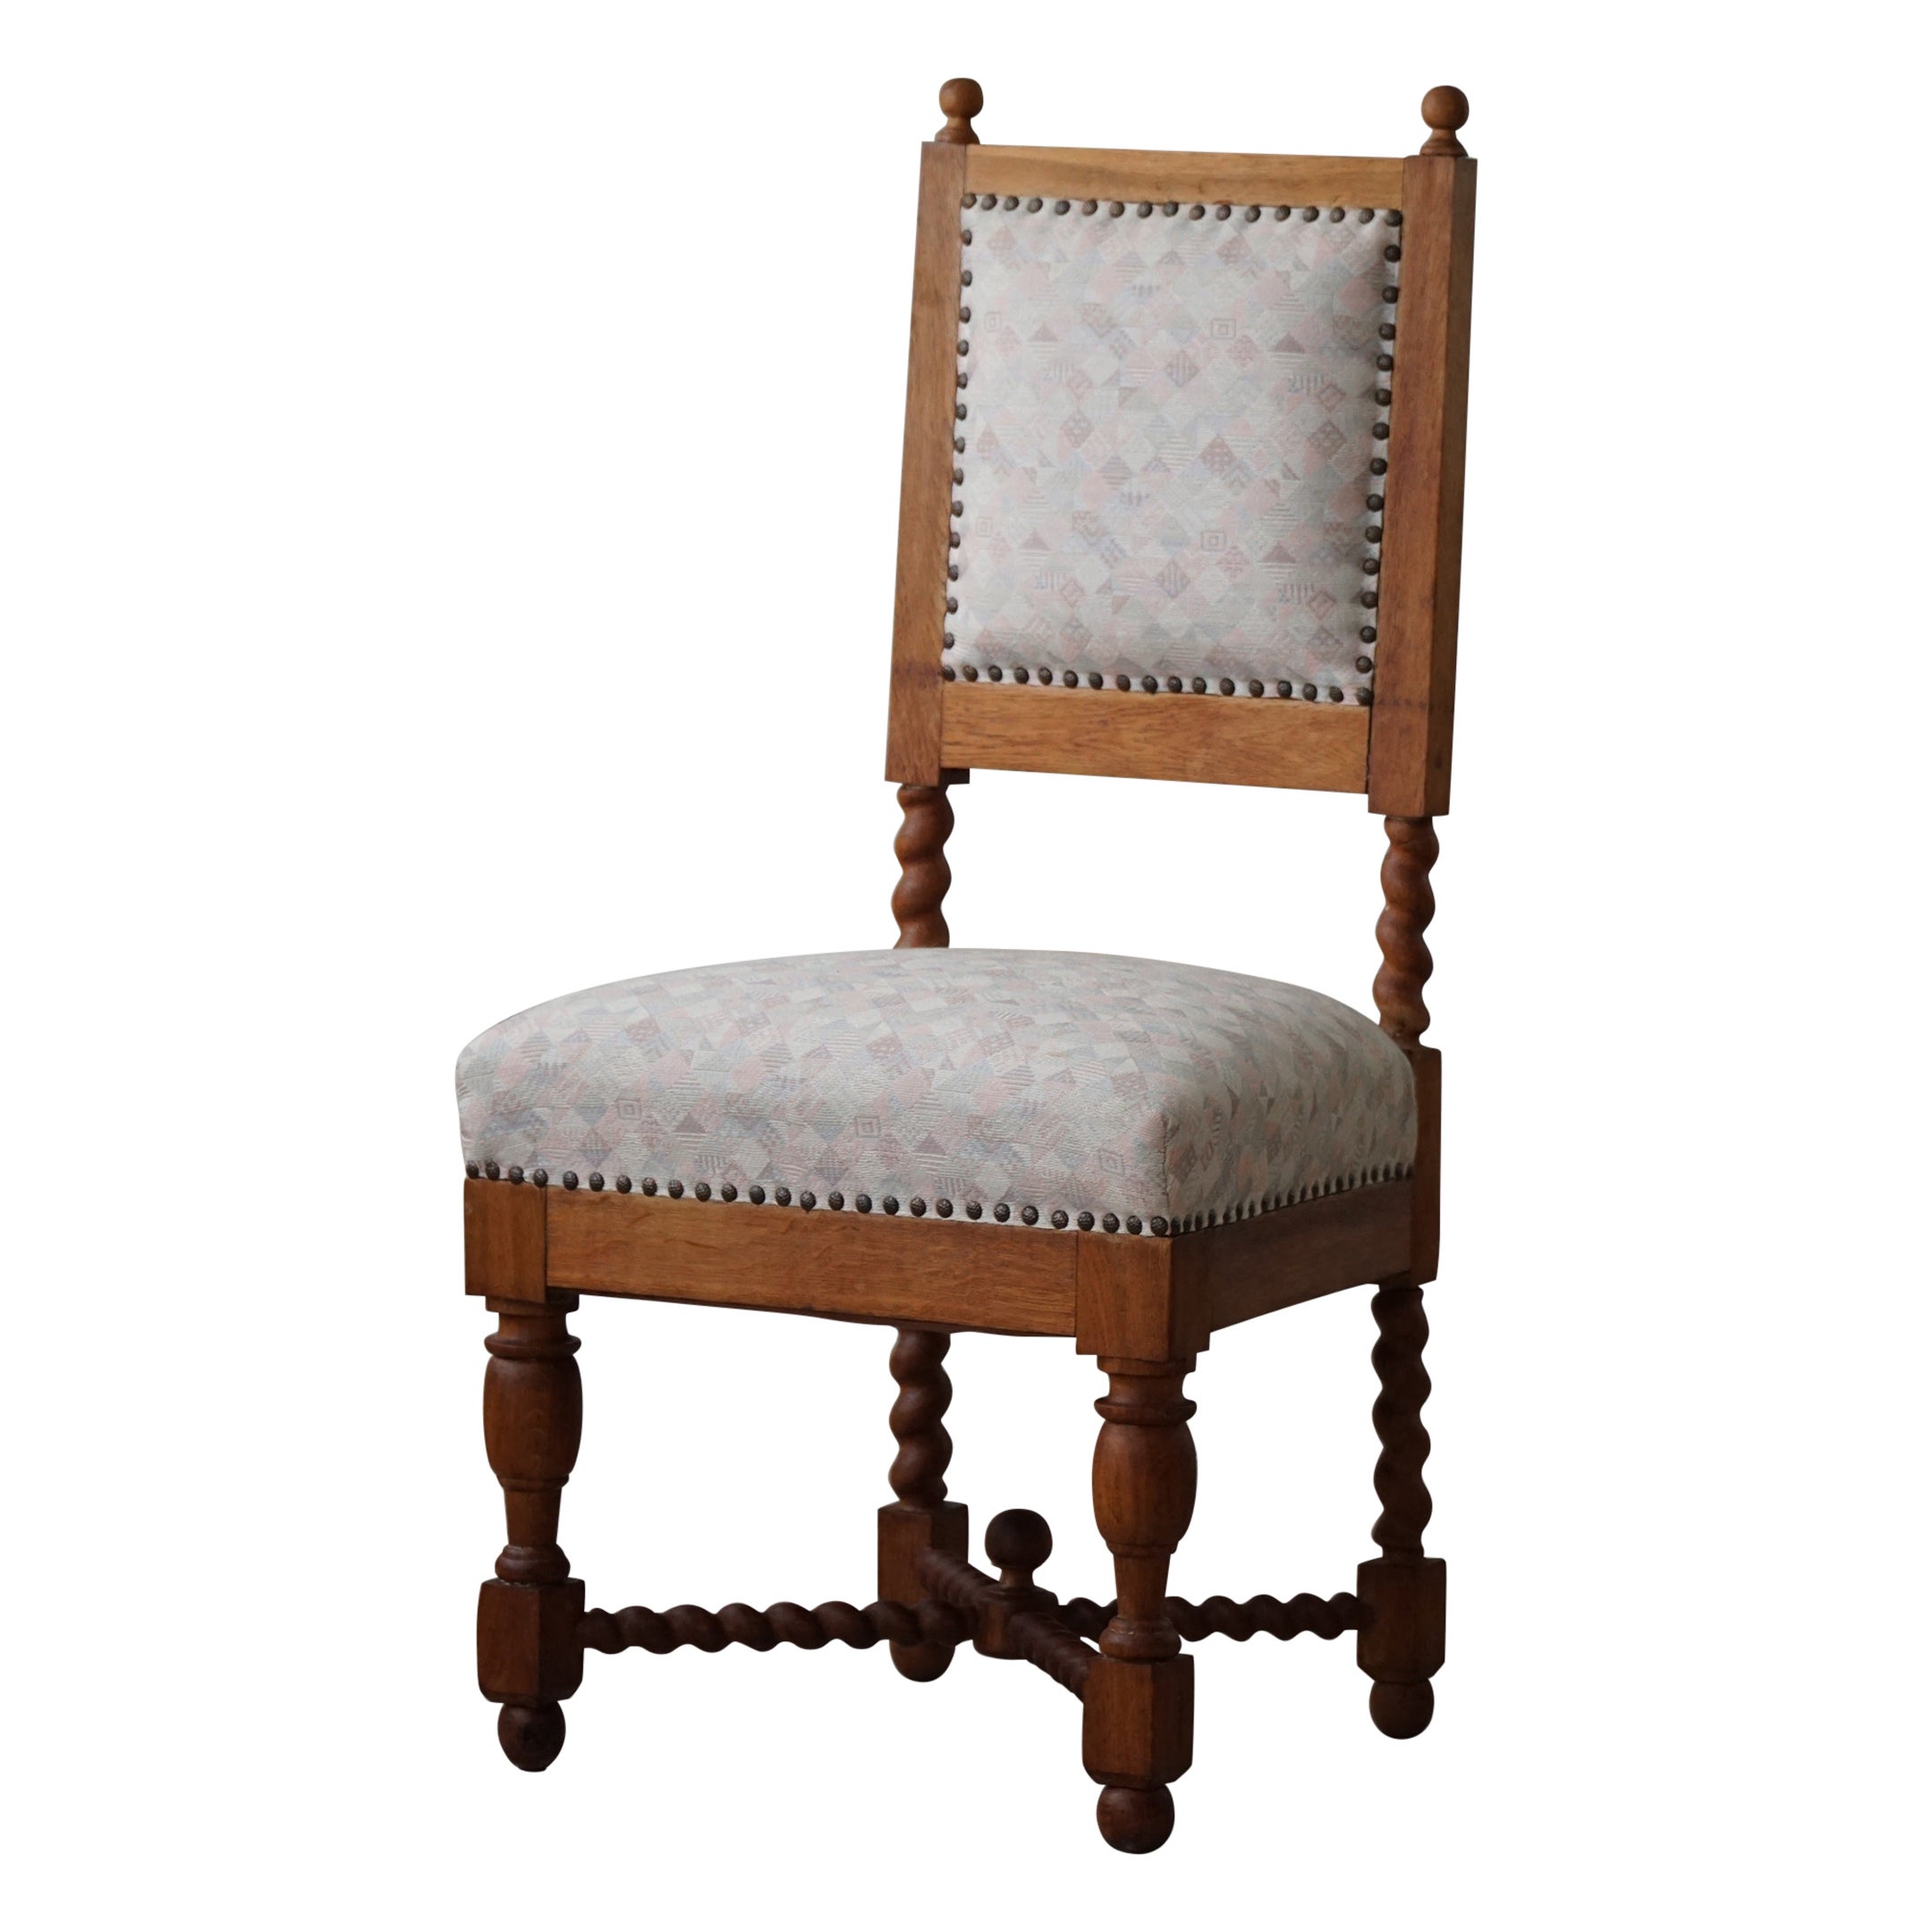 Englischer Stuhl im Barockstil mit gedrehten Beinen aus Eiche mit Barley-Muster, 1920er Jahre